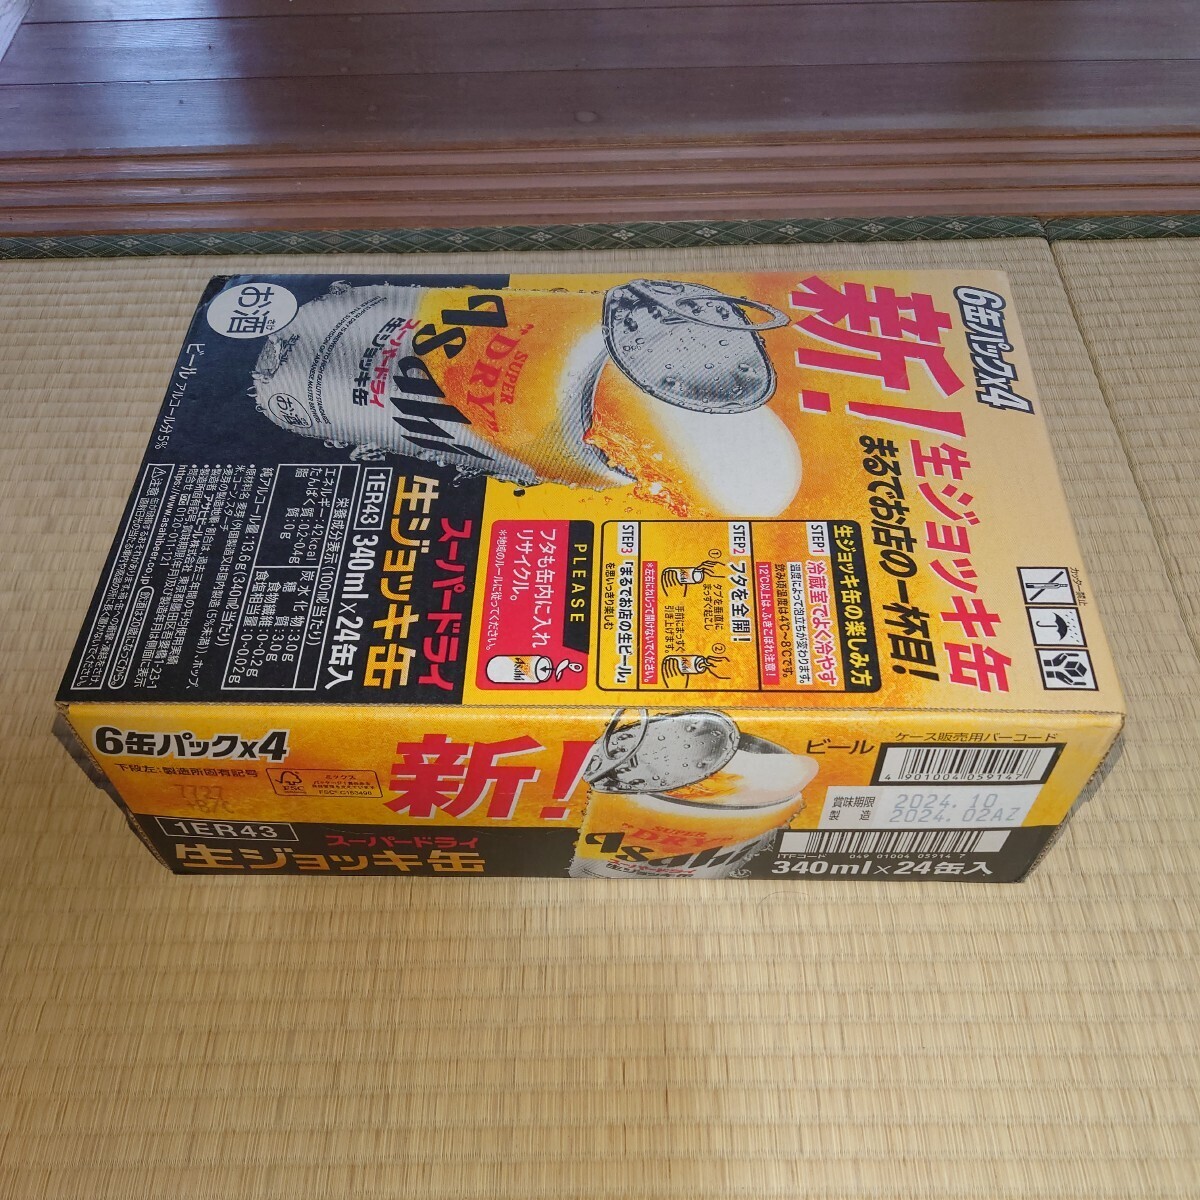 アサヒ スーパードライ生ジョッキ缶 340ml24缶入の画像1